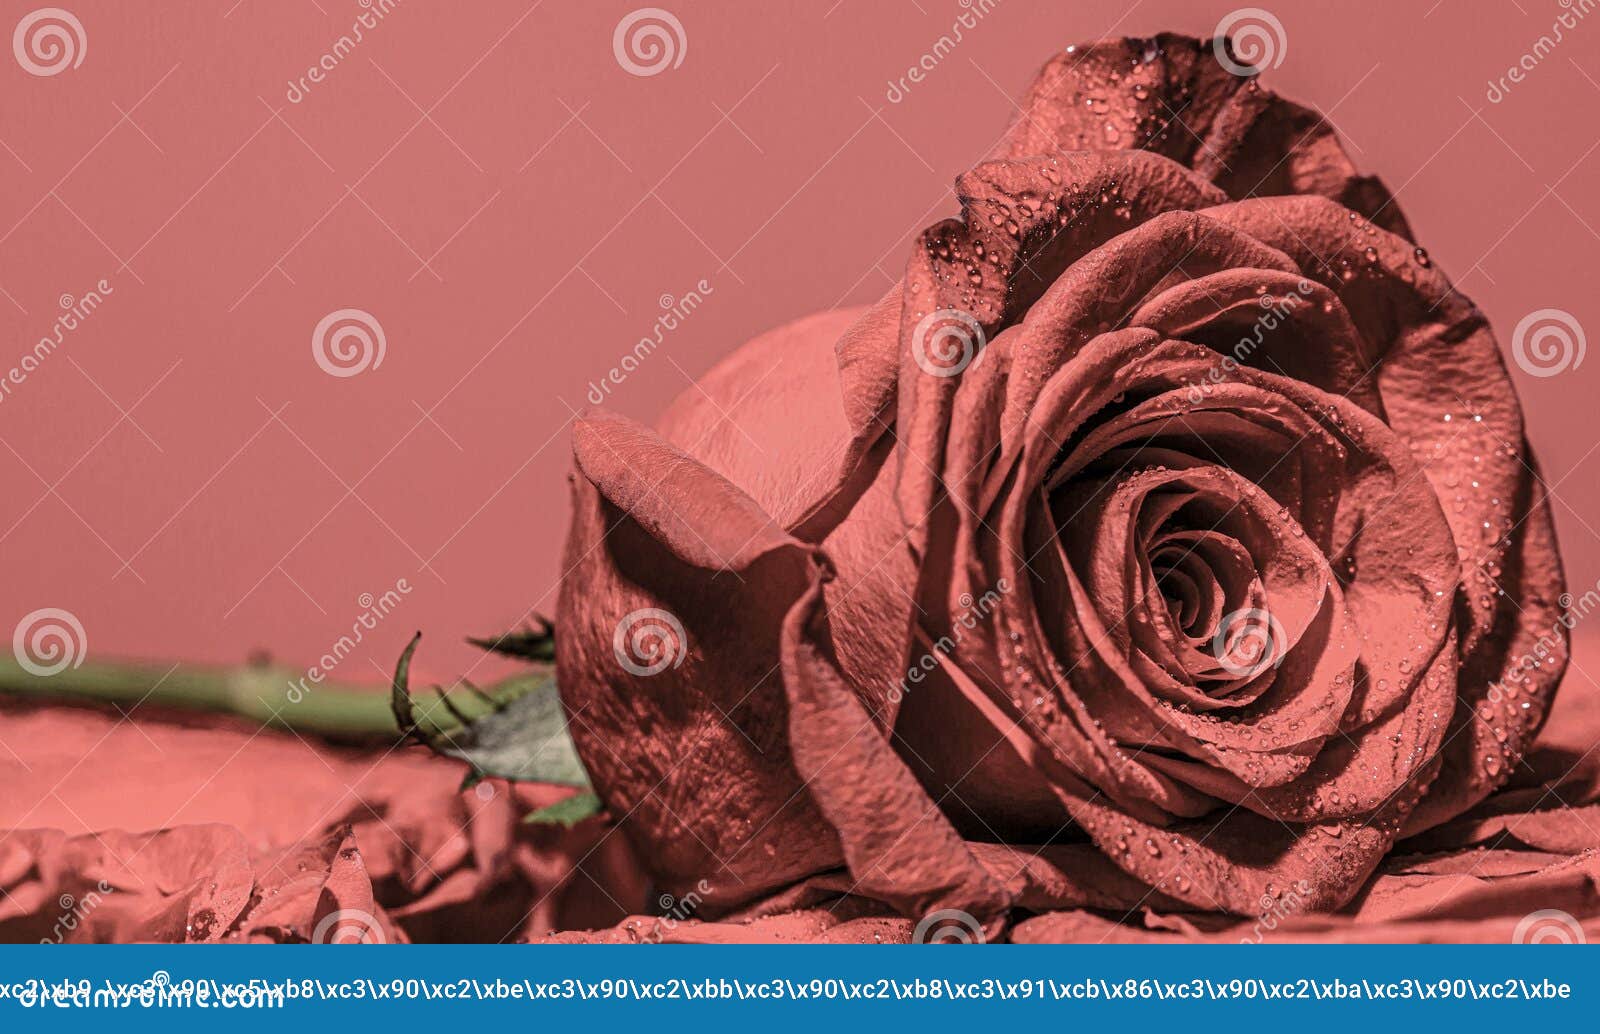 Rosa Roja. Cerca De Rosas Rojas Y Gotas De Agua. Rosas En